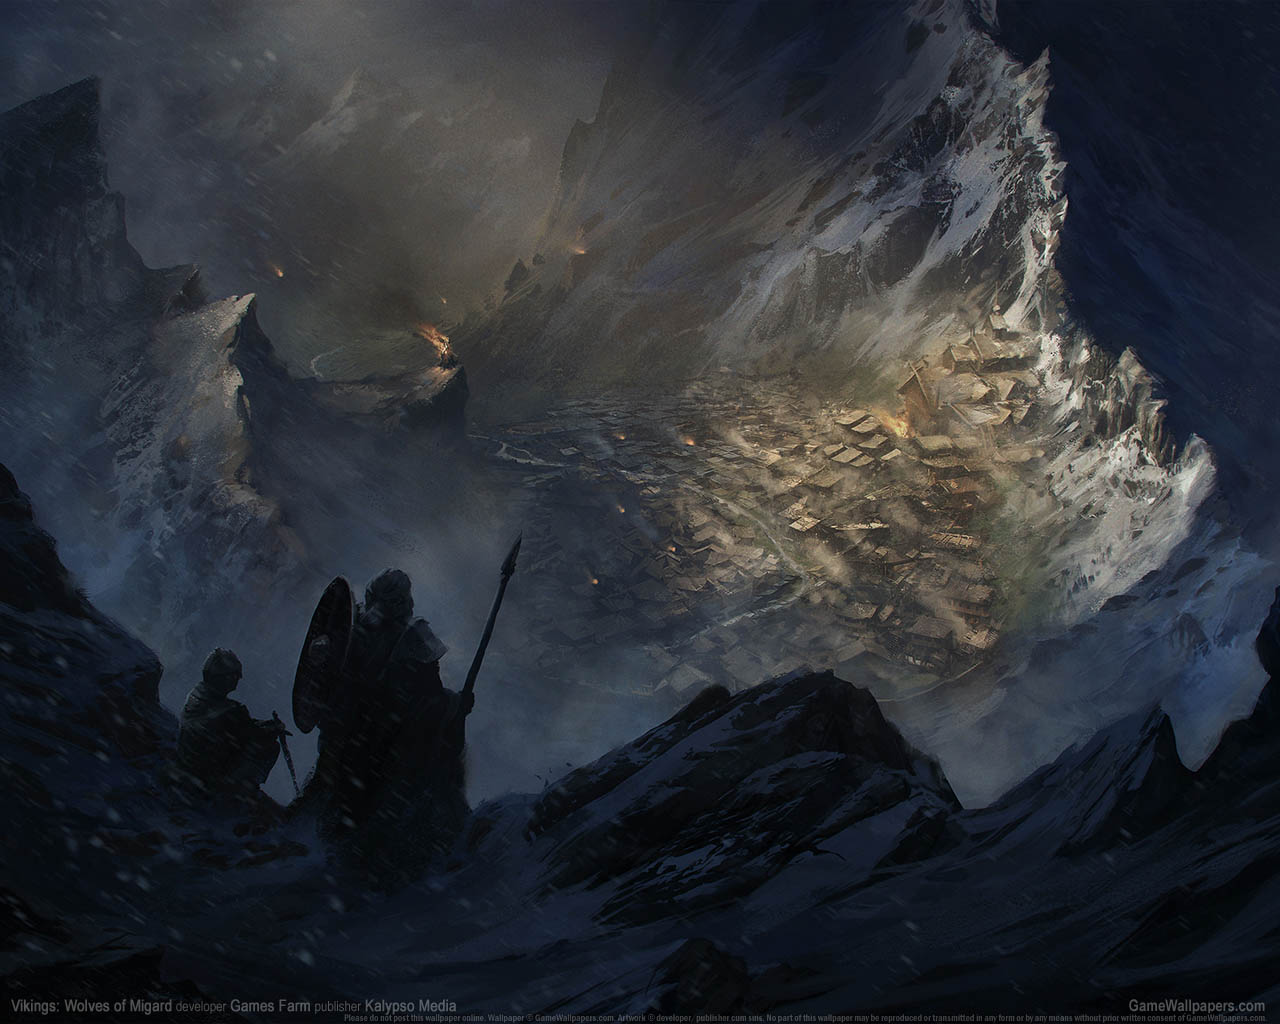 Vikings: Wolves of Migardνmmer=01 wallpaper  1280x1024